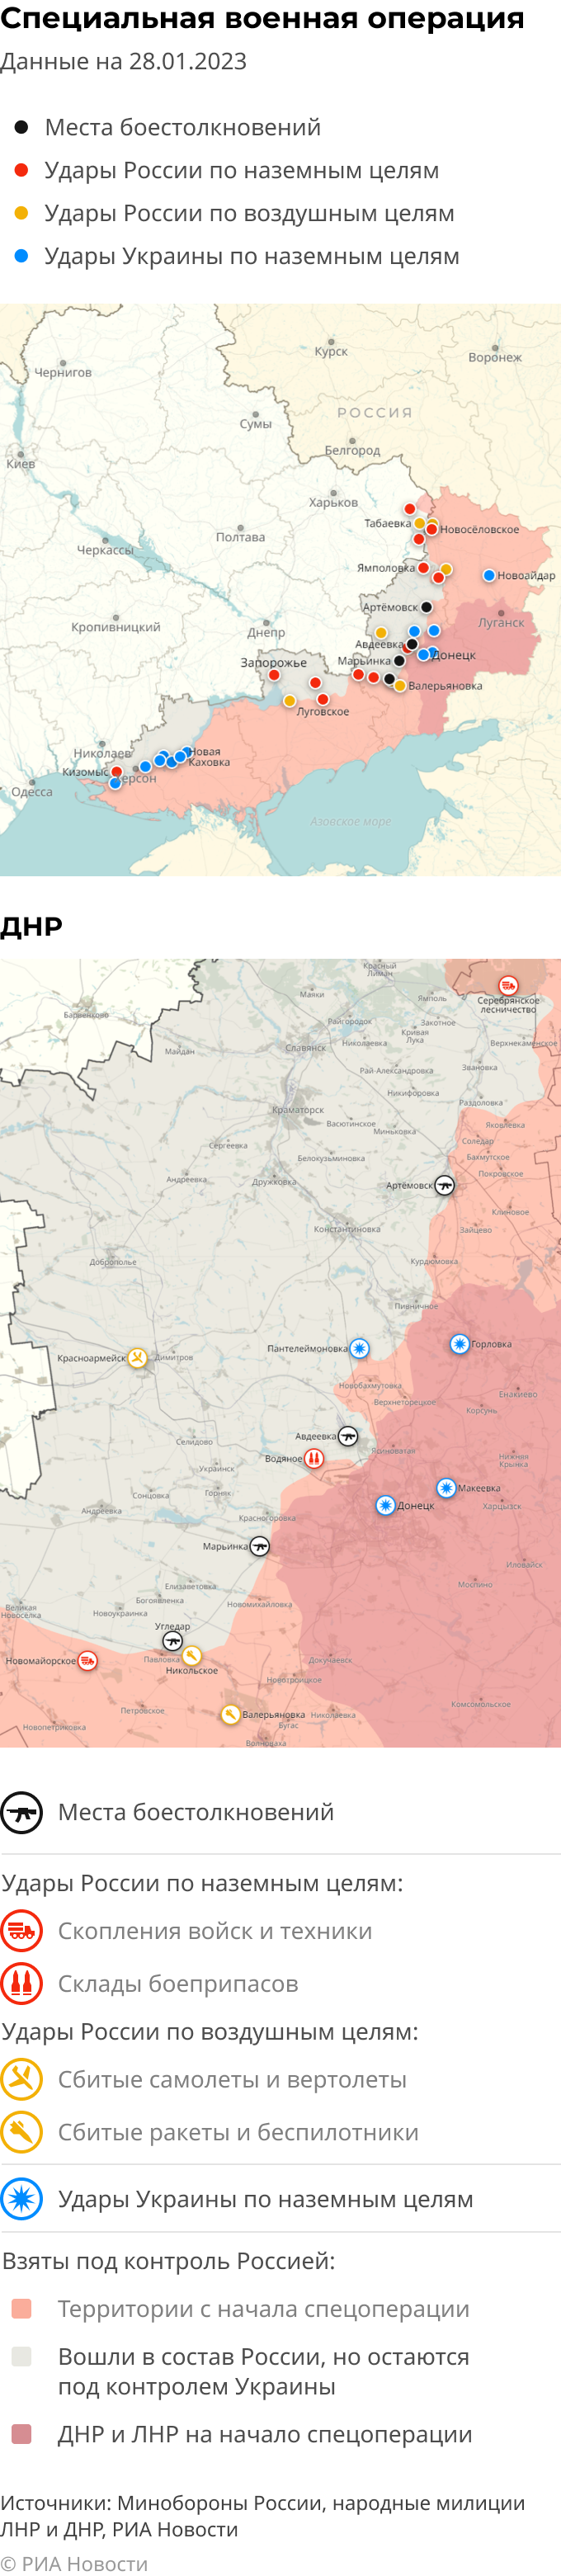 Интерактивная карта спецоперации вооруженных сил